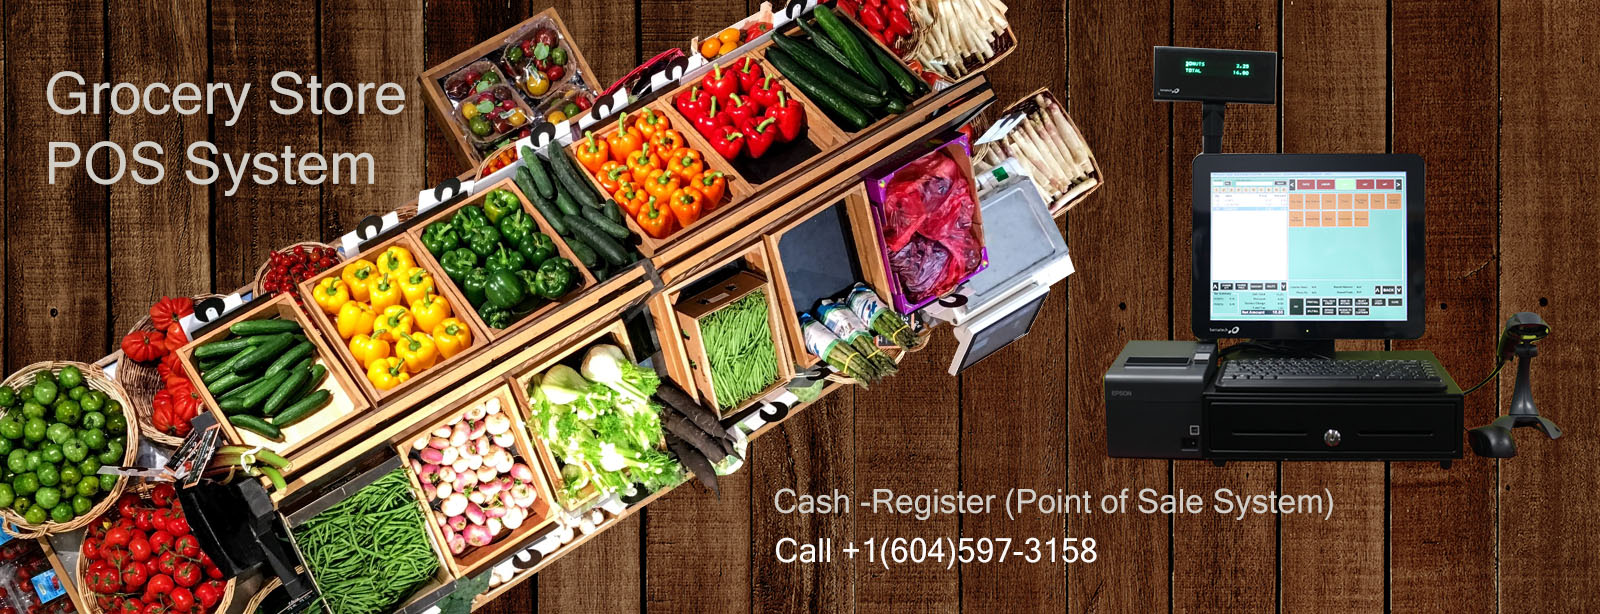 Grocery Shop/Super Market POS System, Cash Register, Point of Sale System